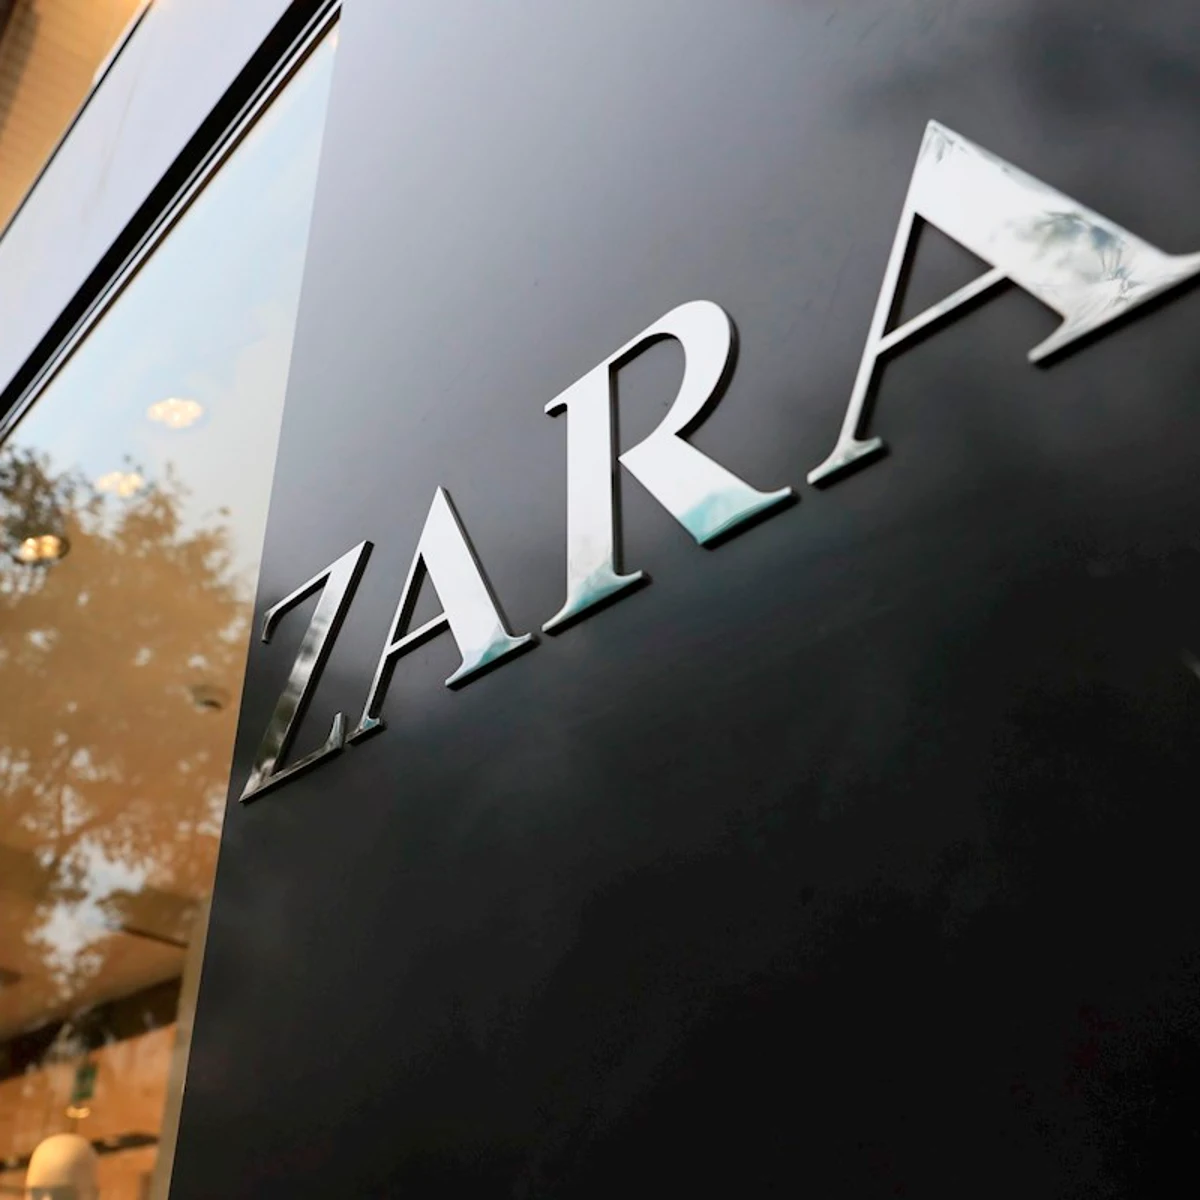 Zara empezará a vender ropa de segunda mano en su propia app - Ambas Manos